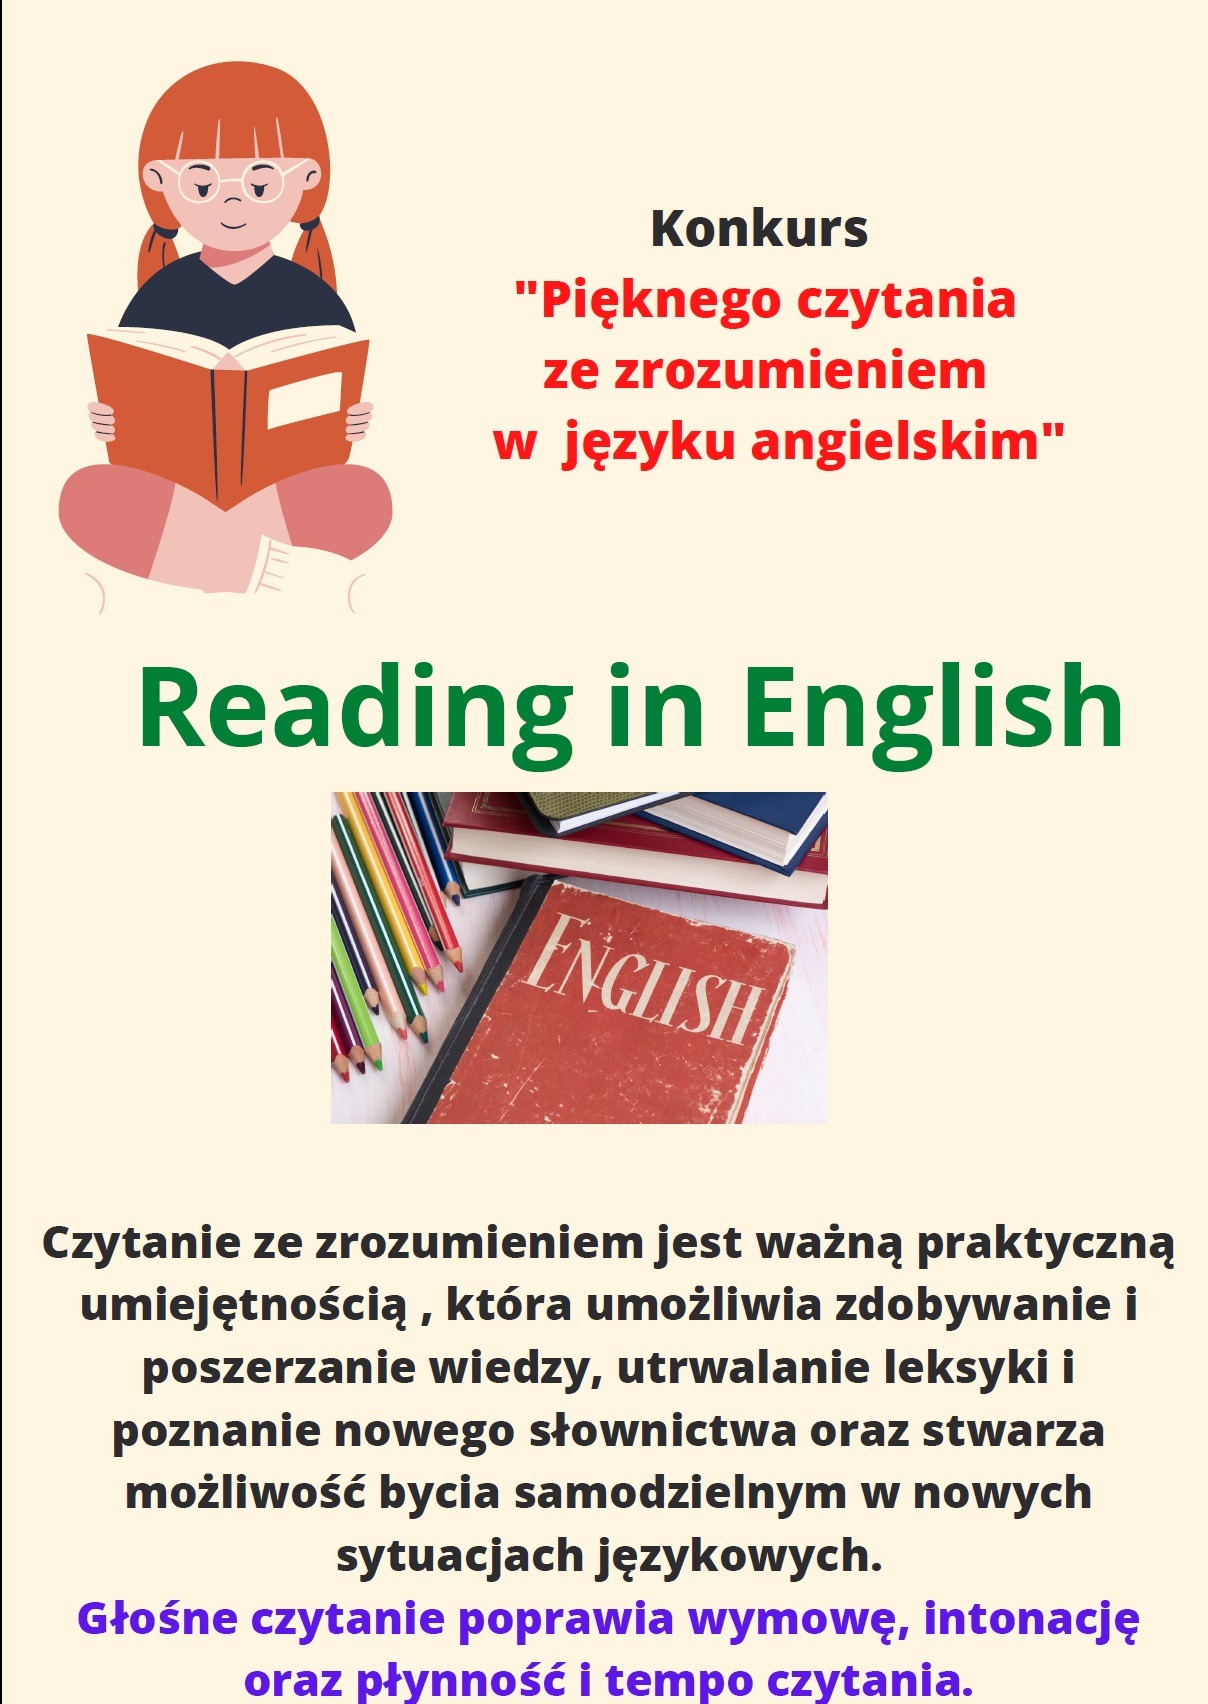 Konkurs "Pięknego czytania ze zrozumieniem w języku angielskim" - Obrazek 1